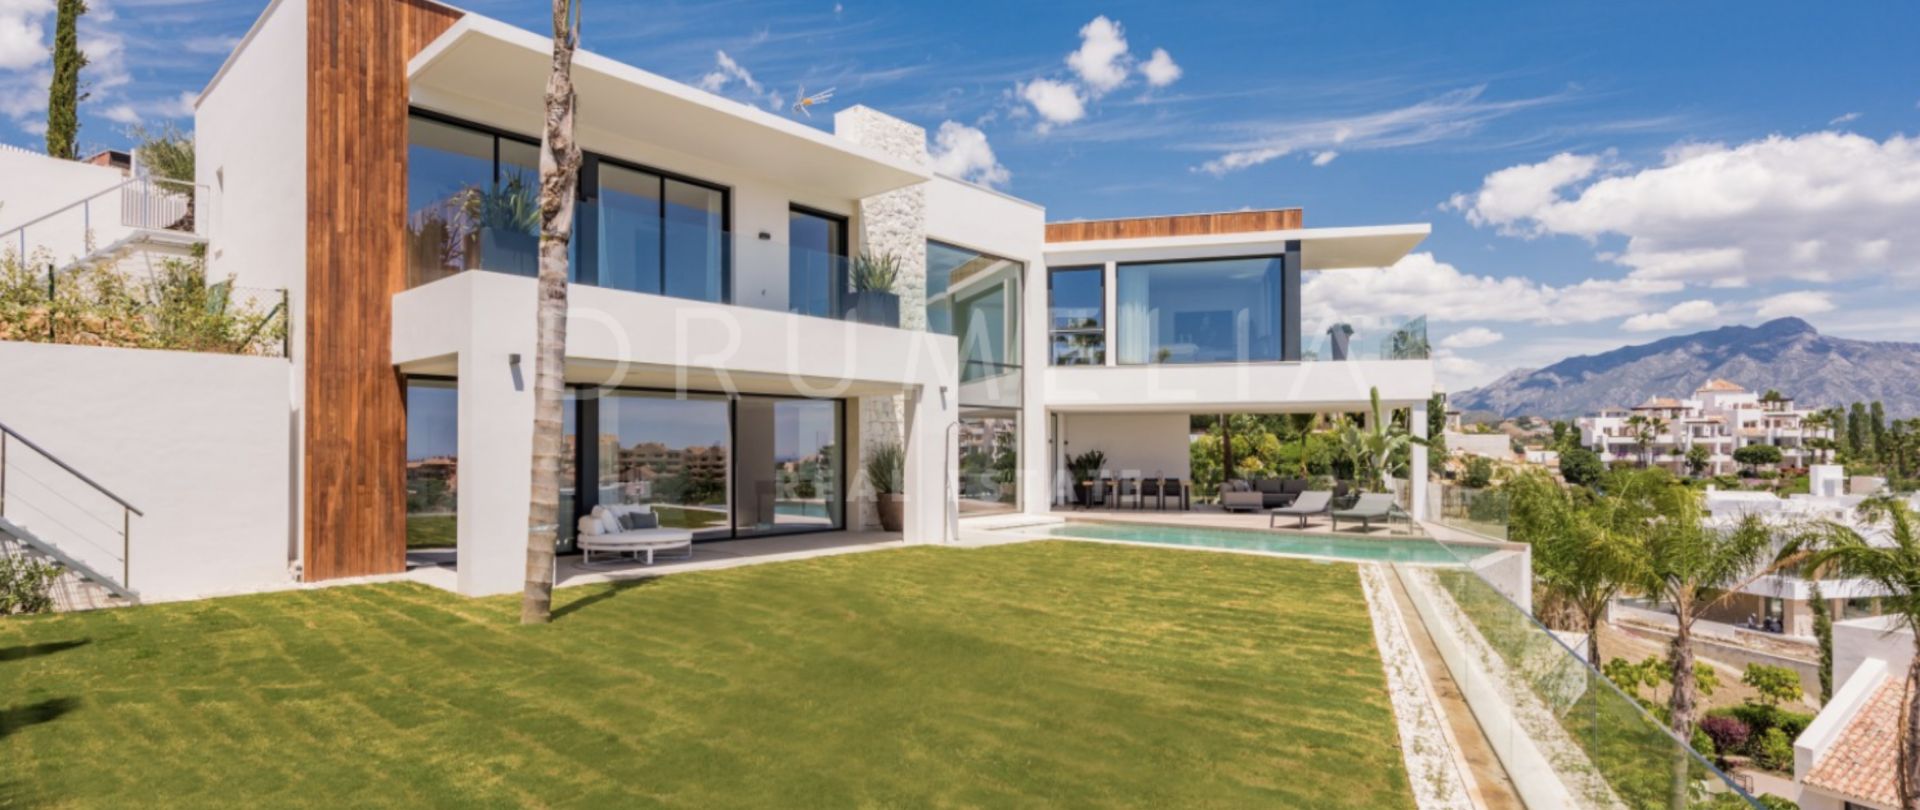 Spektakulär modern villa med panoramautsikt i Alqueria, Benahavis